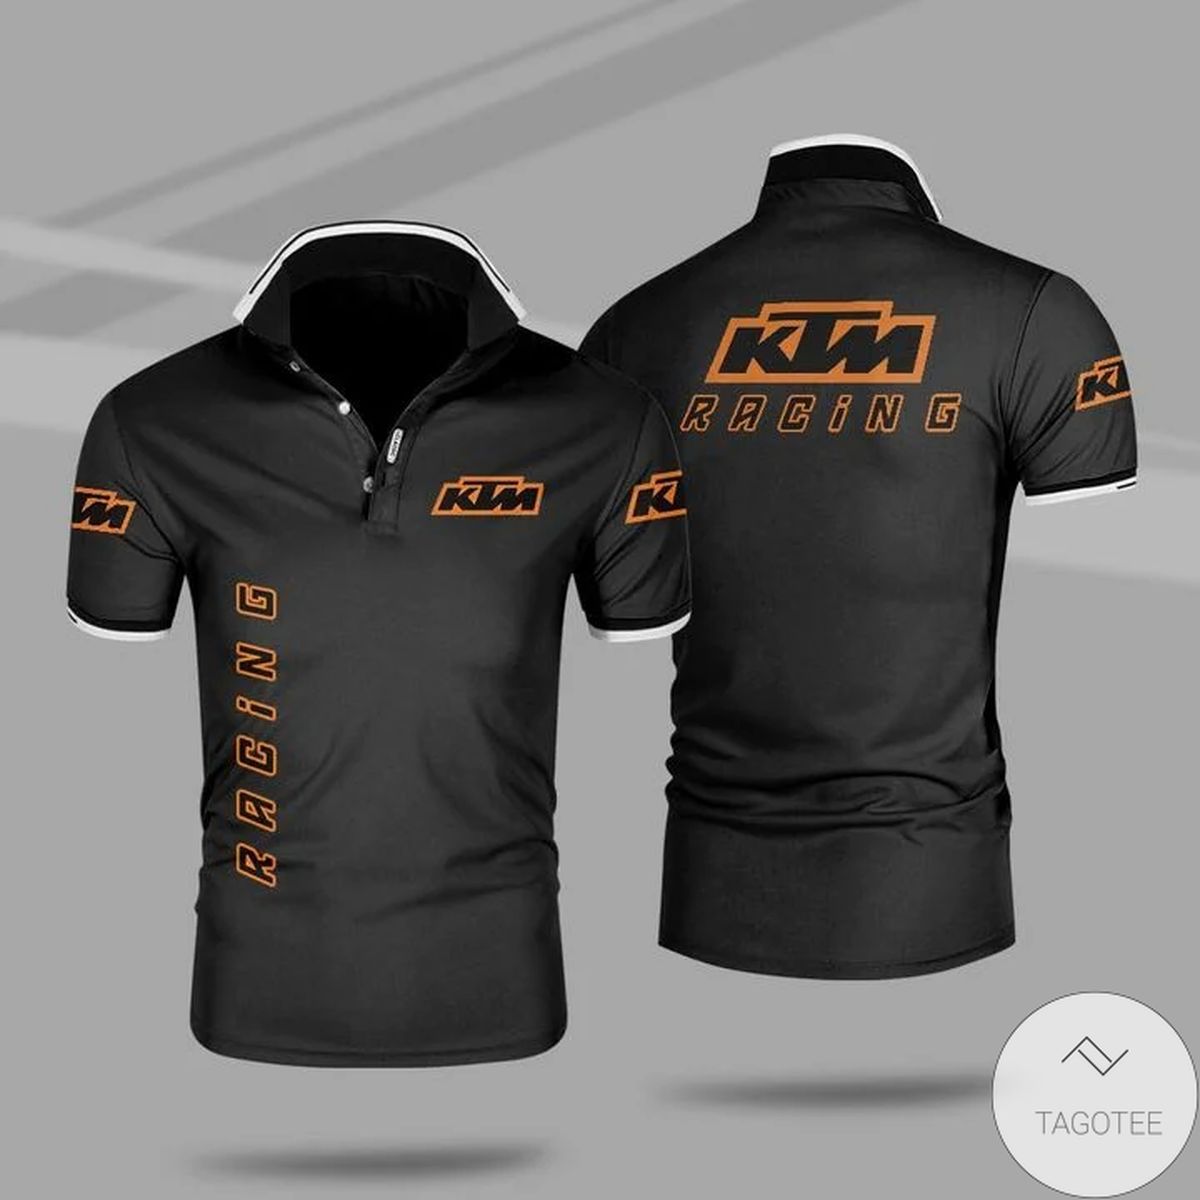 Ktm Racing Polo Shirt